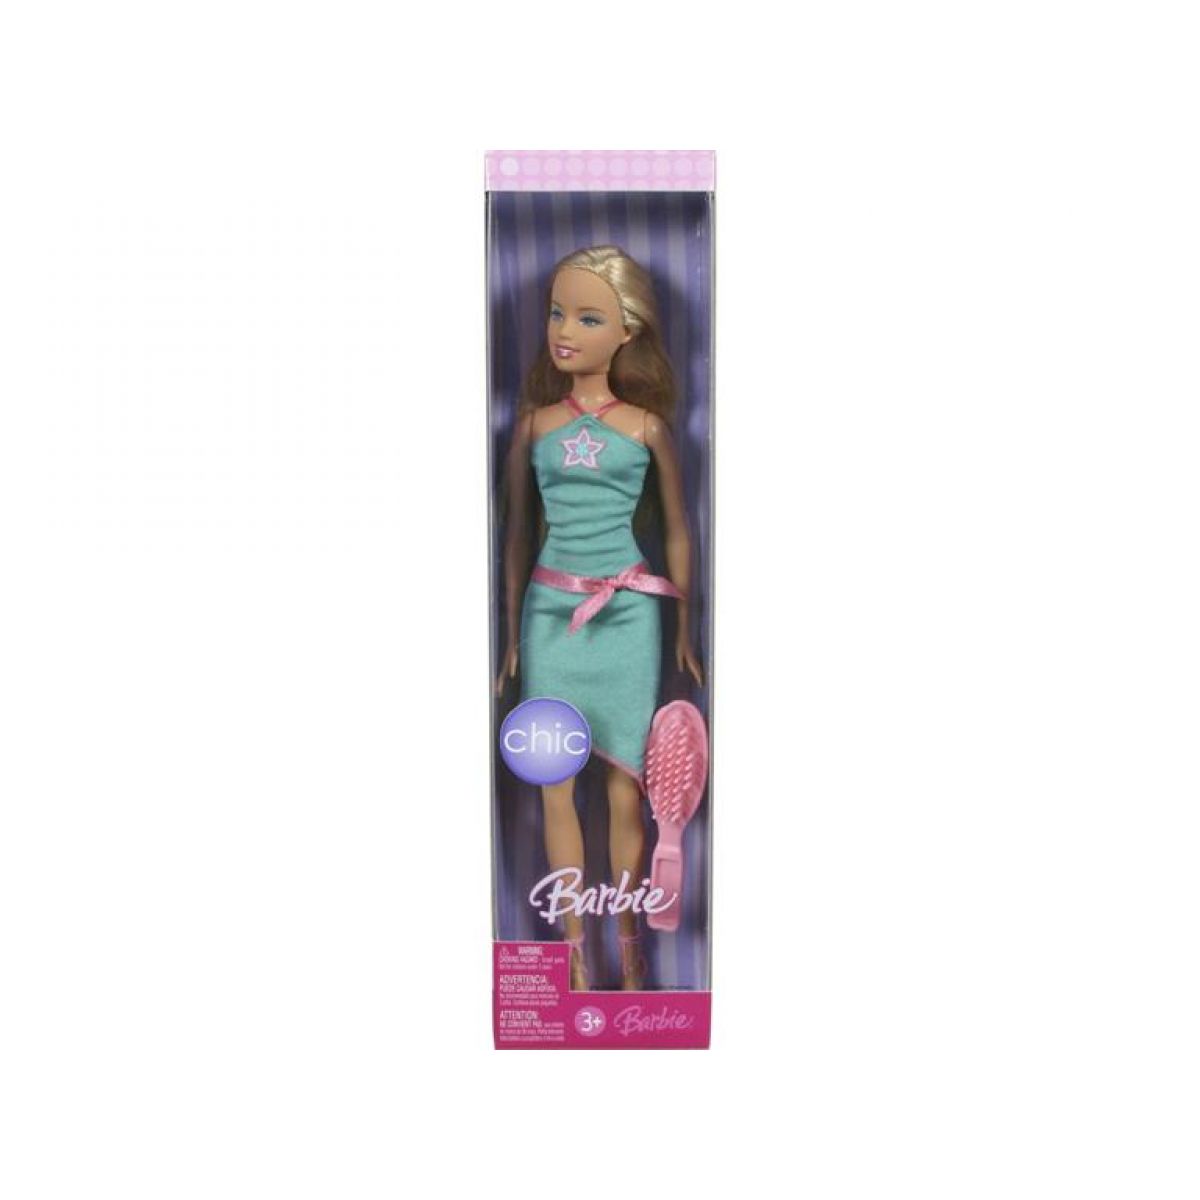 Barbie Chic 2007 Mattel K8650